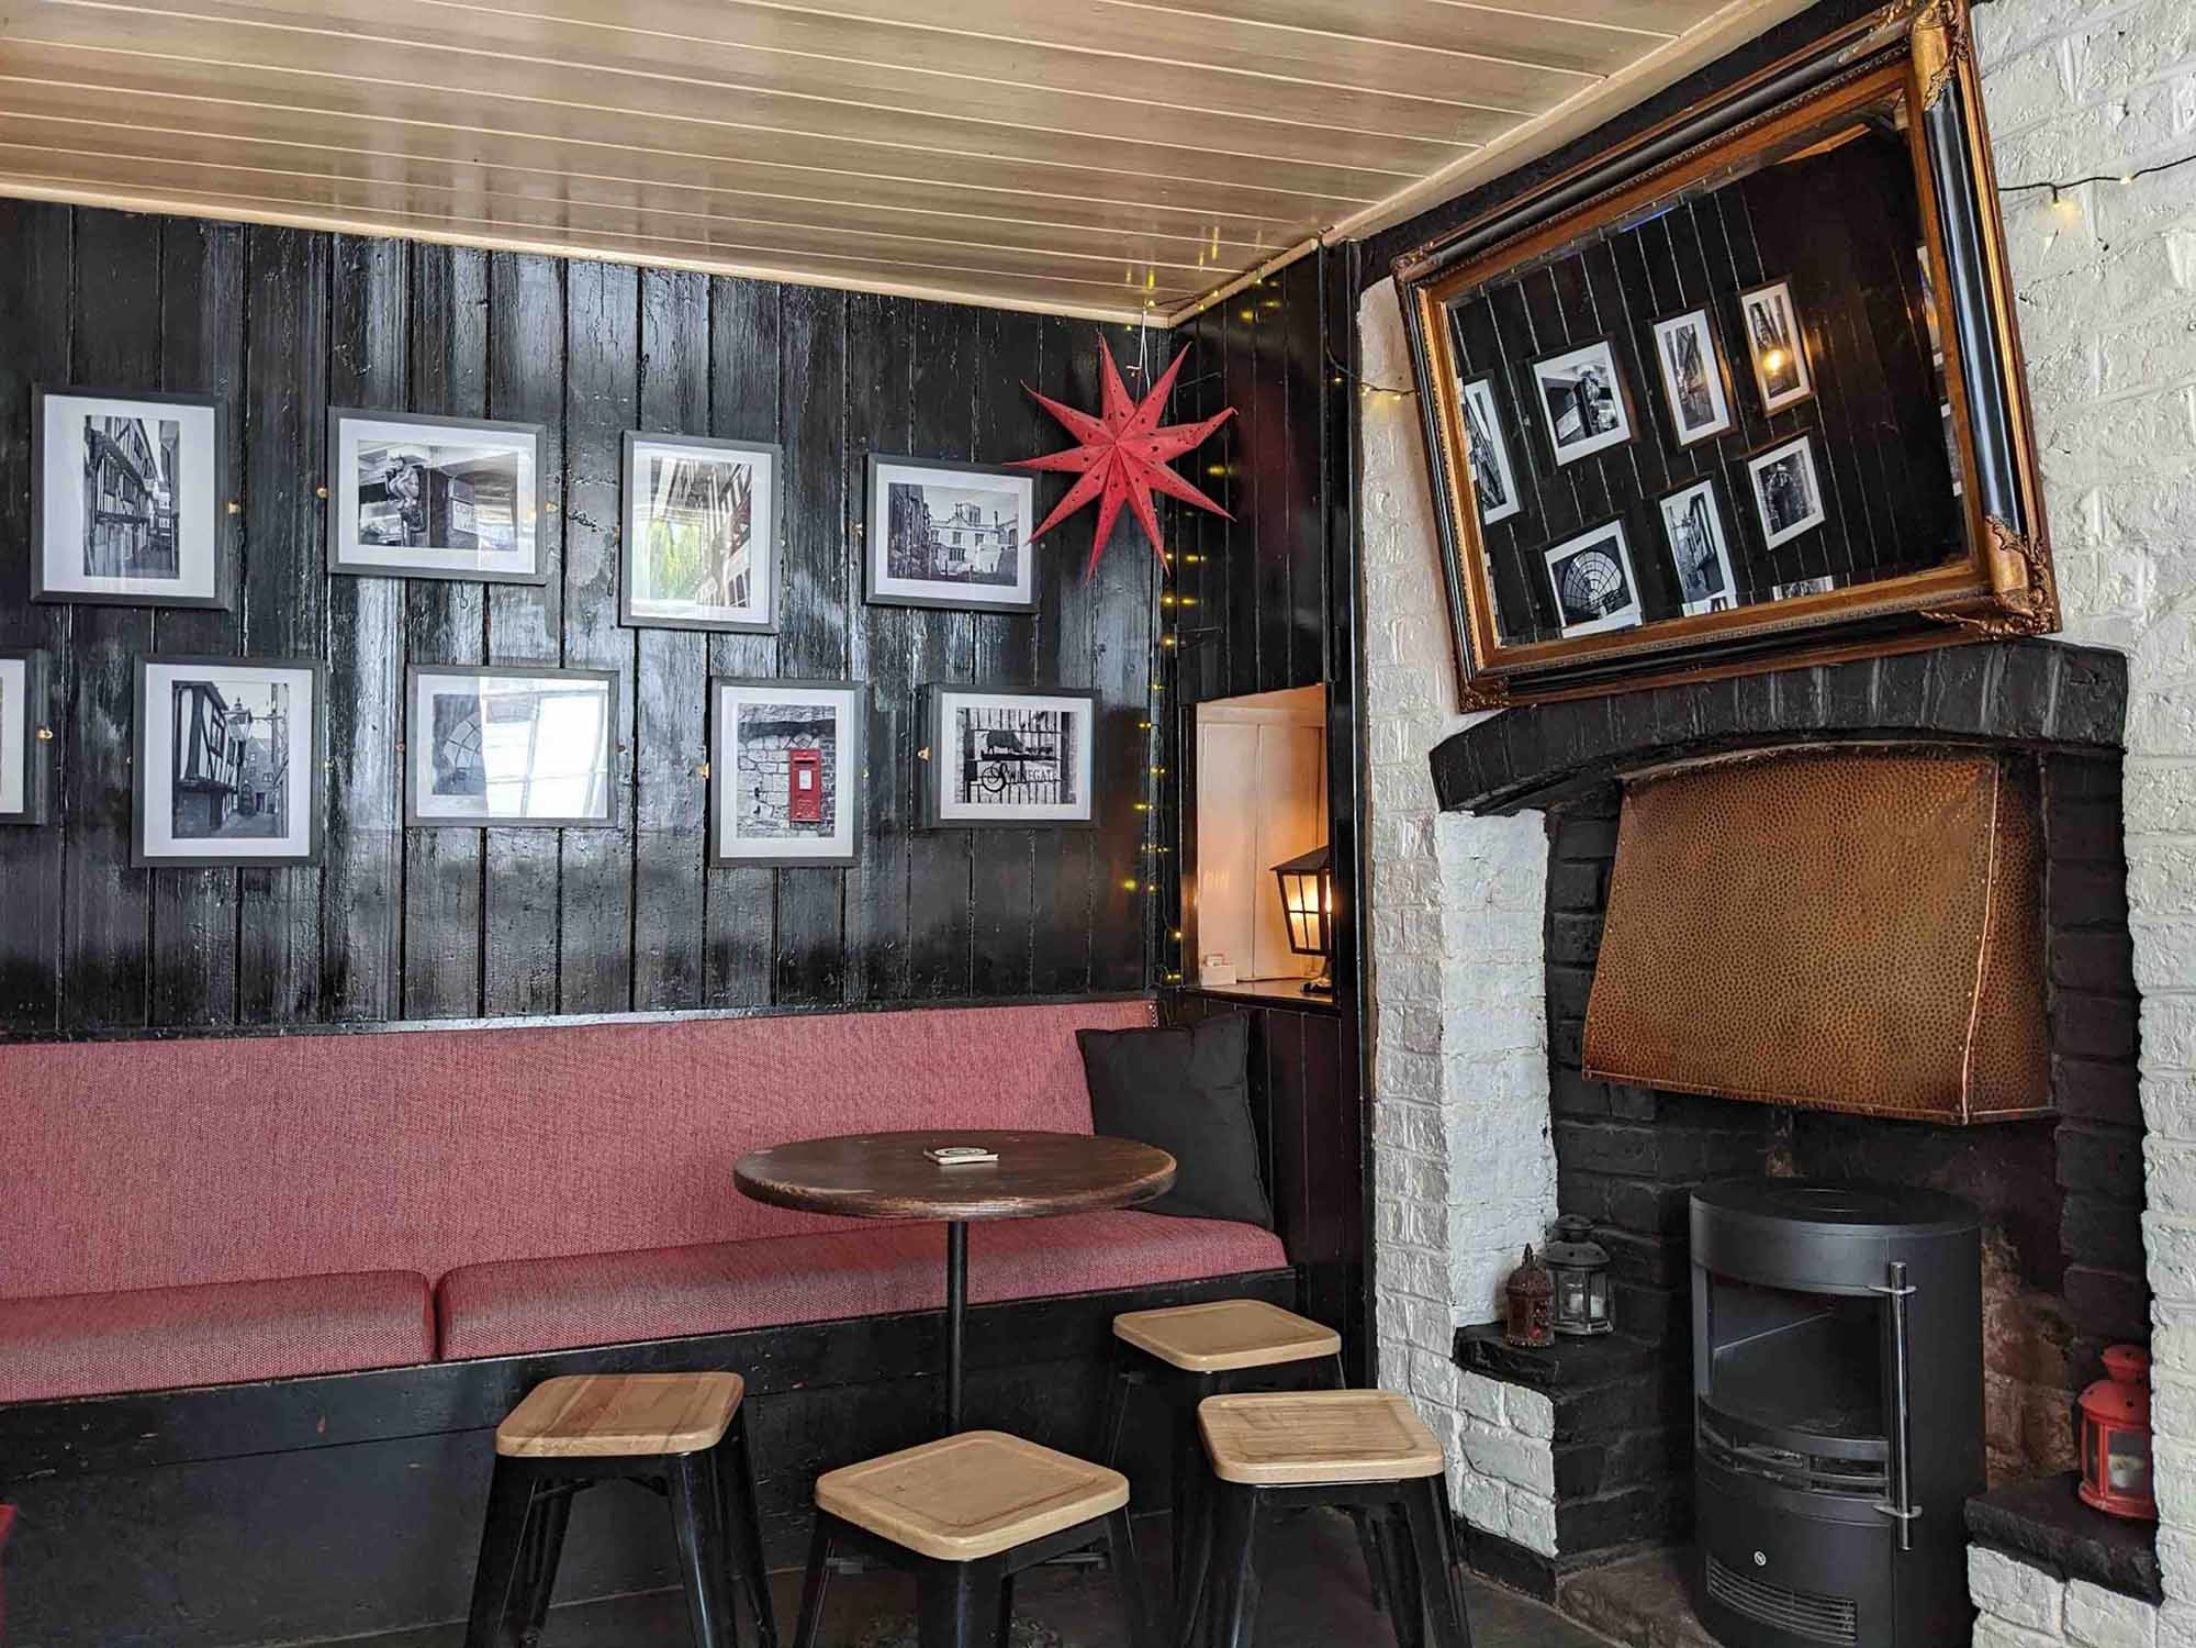 Snickleway Inn - Best Pubs in York